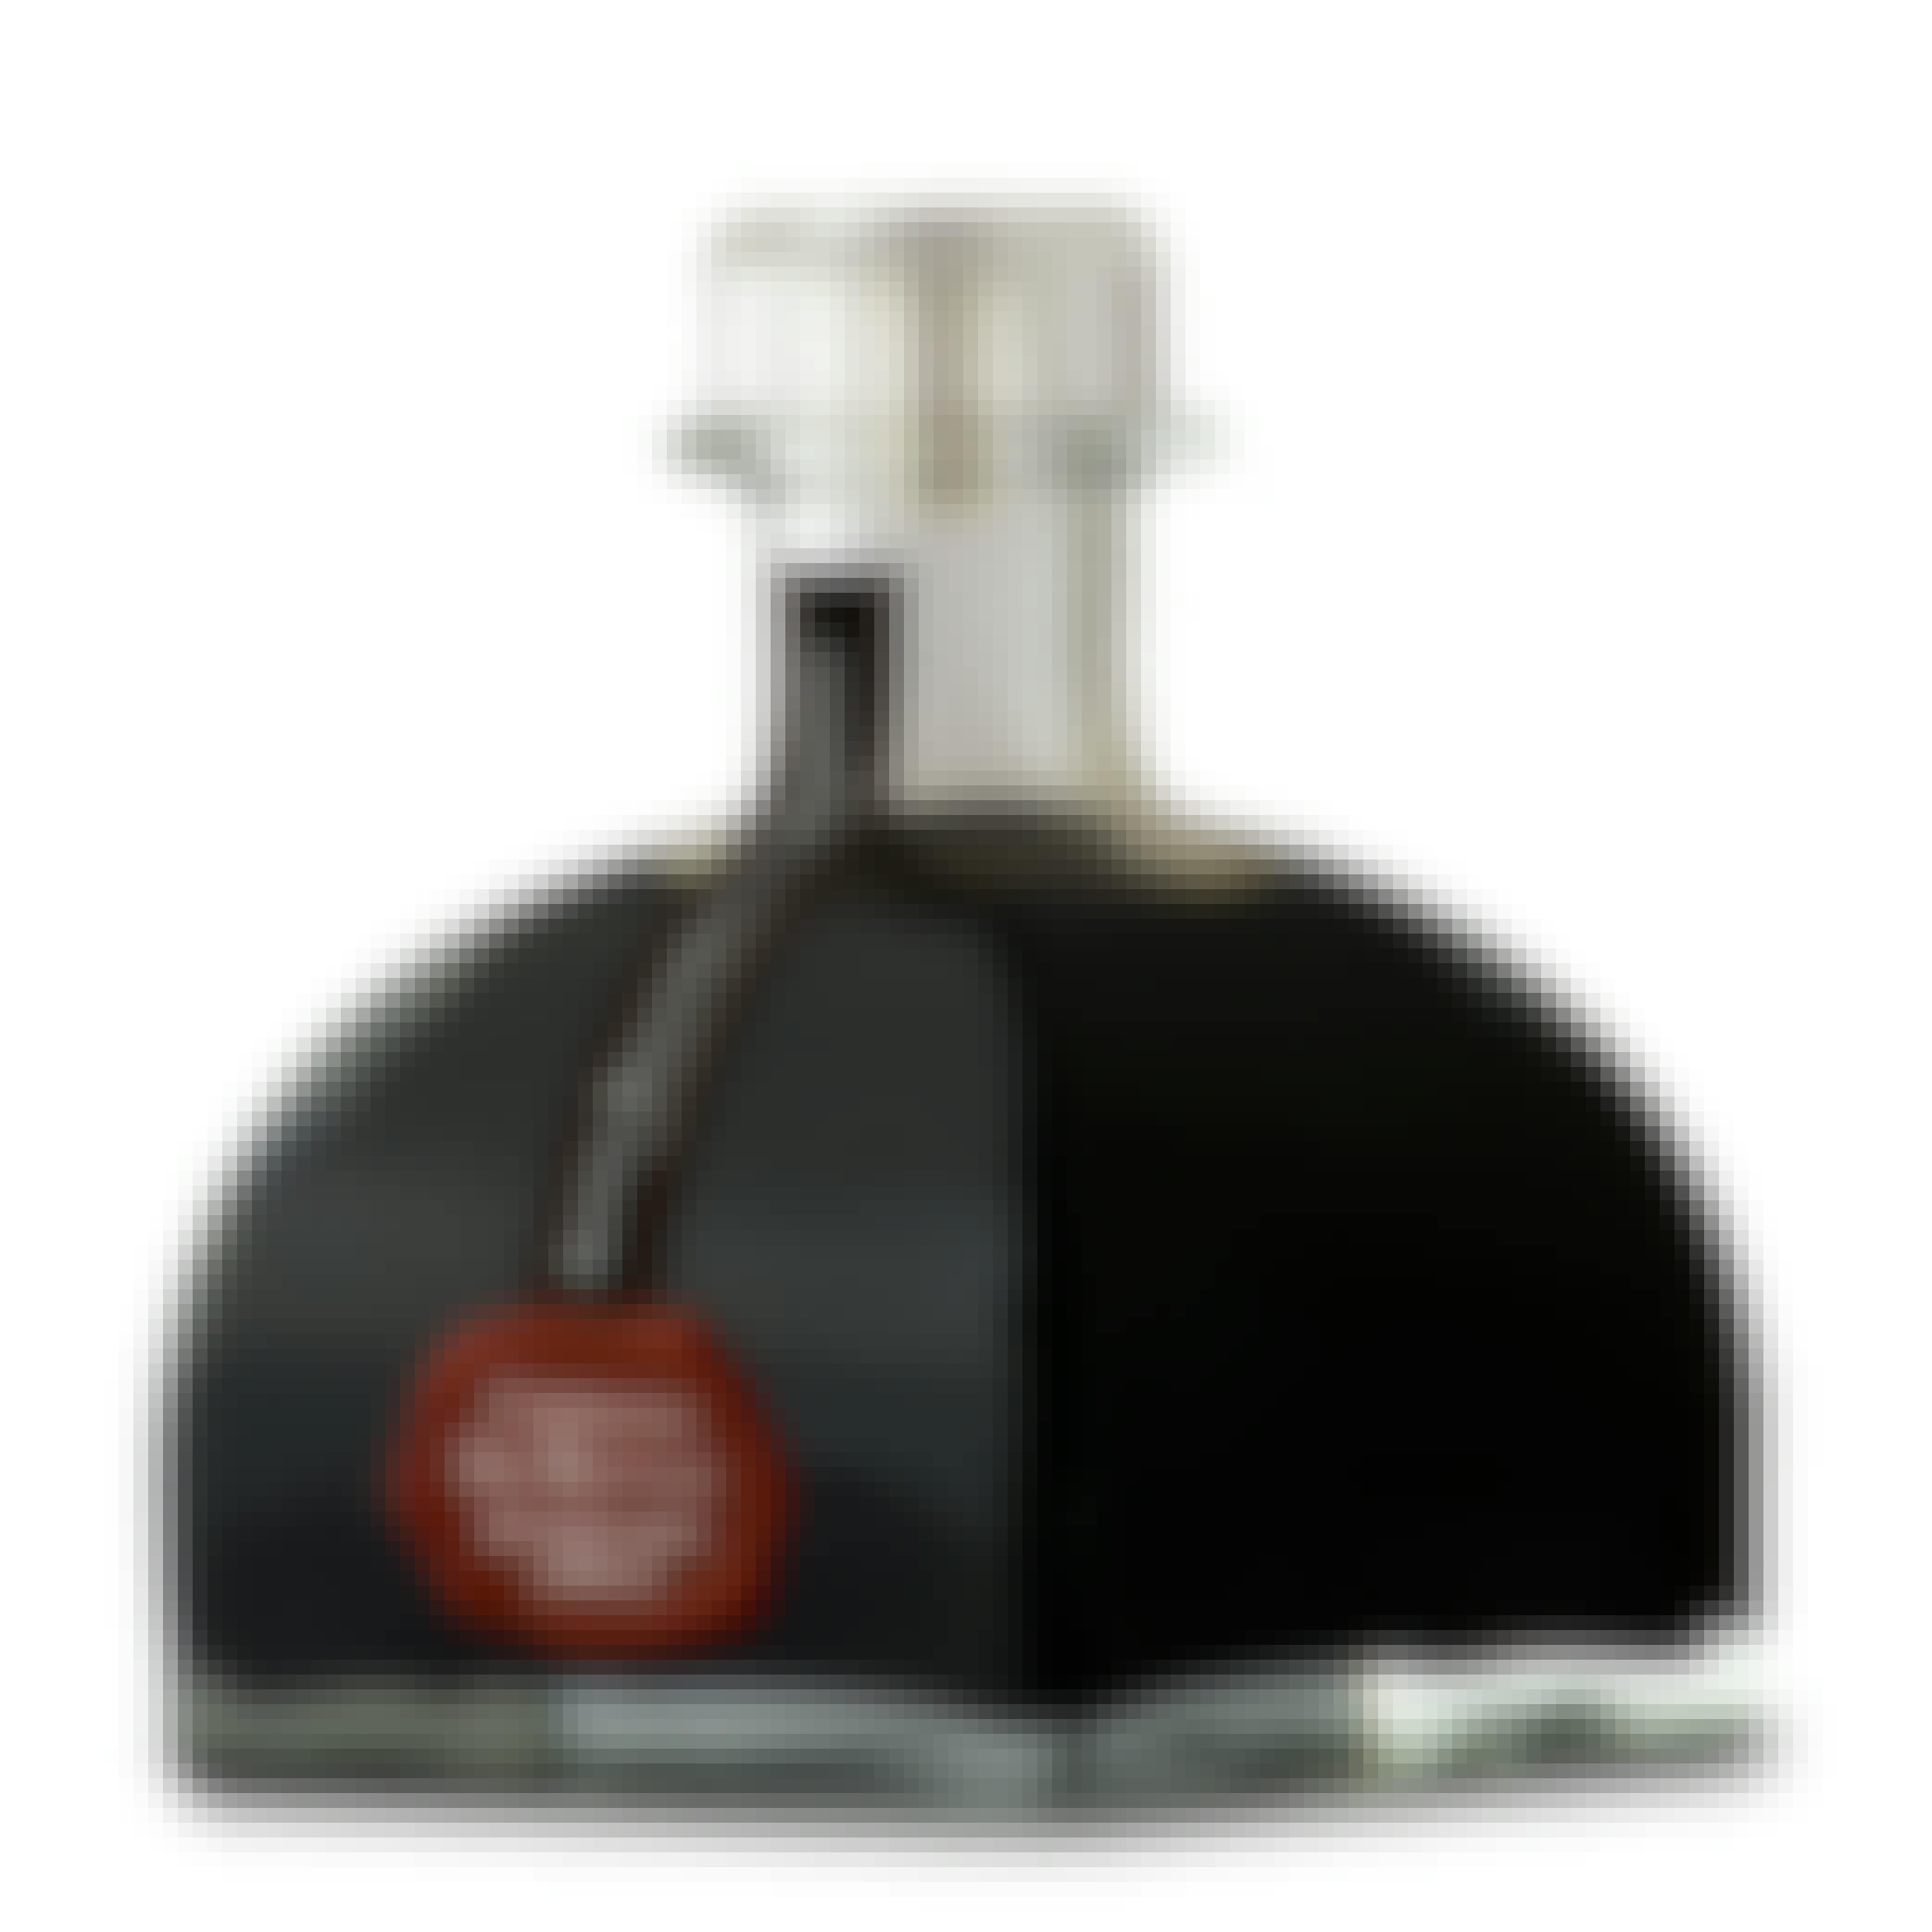 Compagnia Del Montale Special Edition Balsamic Vinegar di Modena